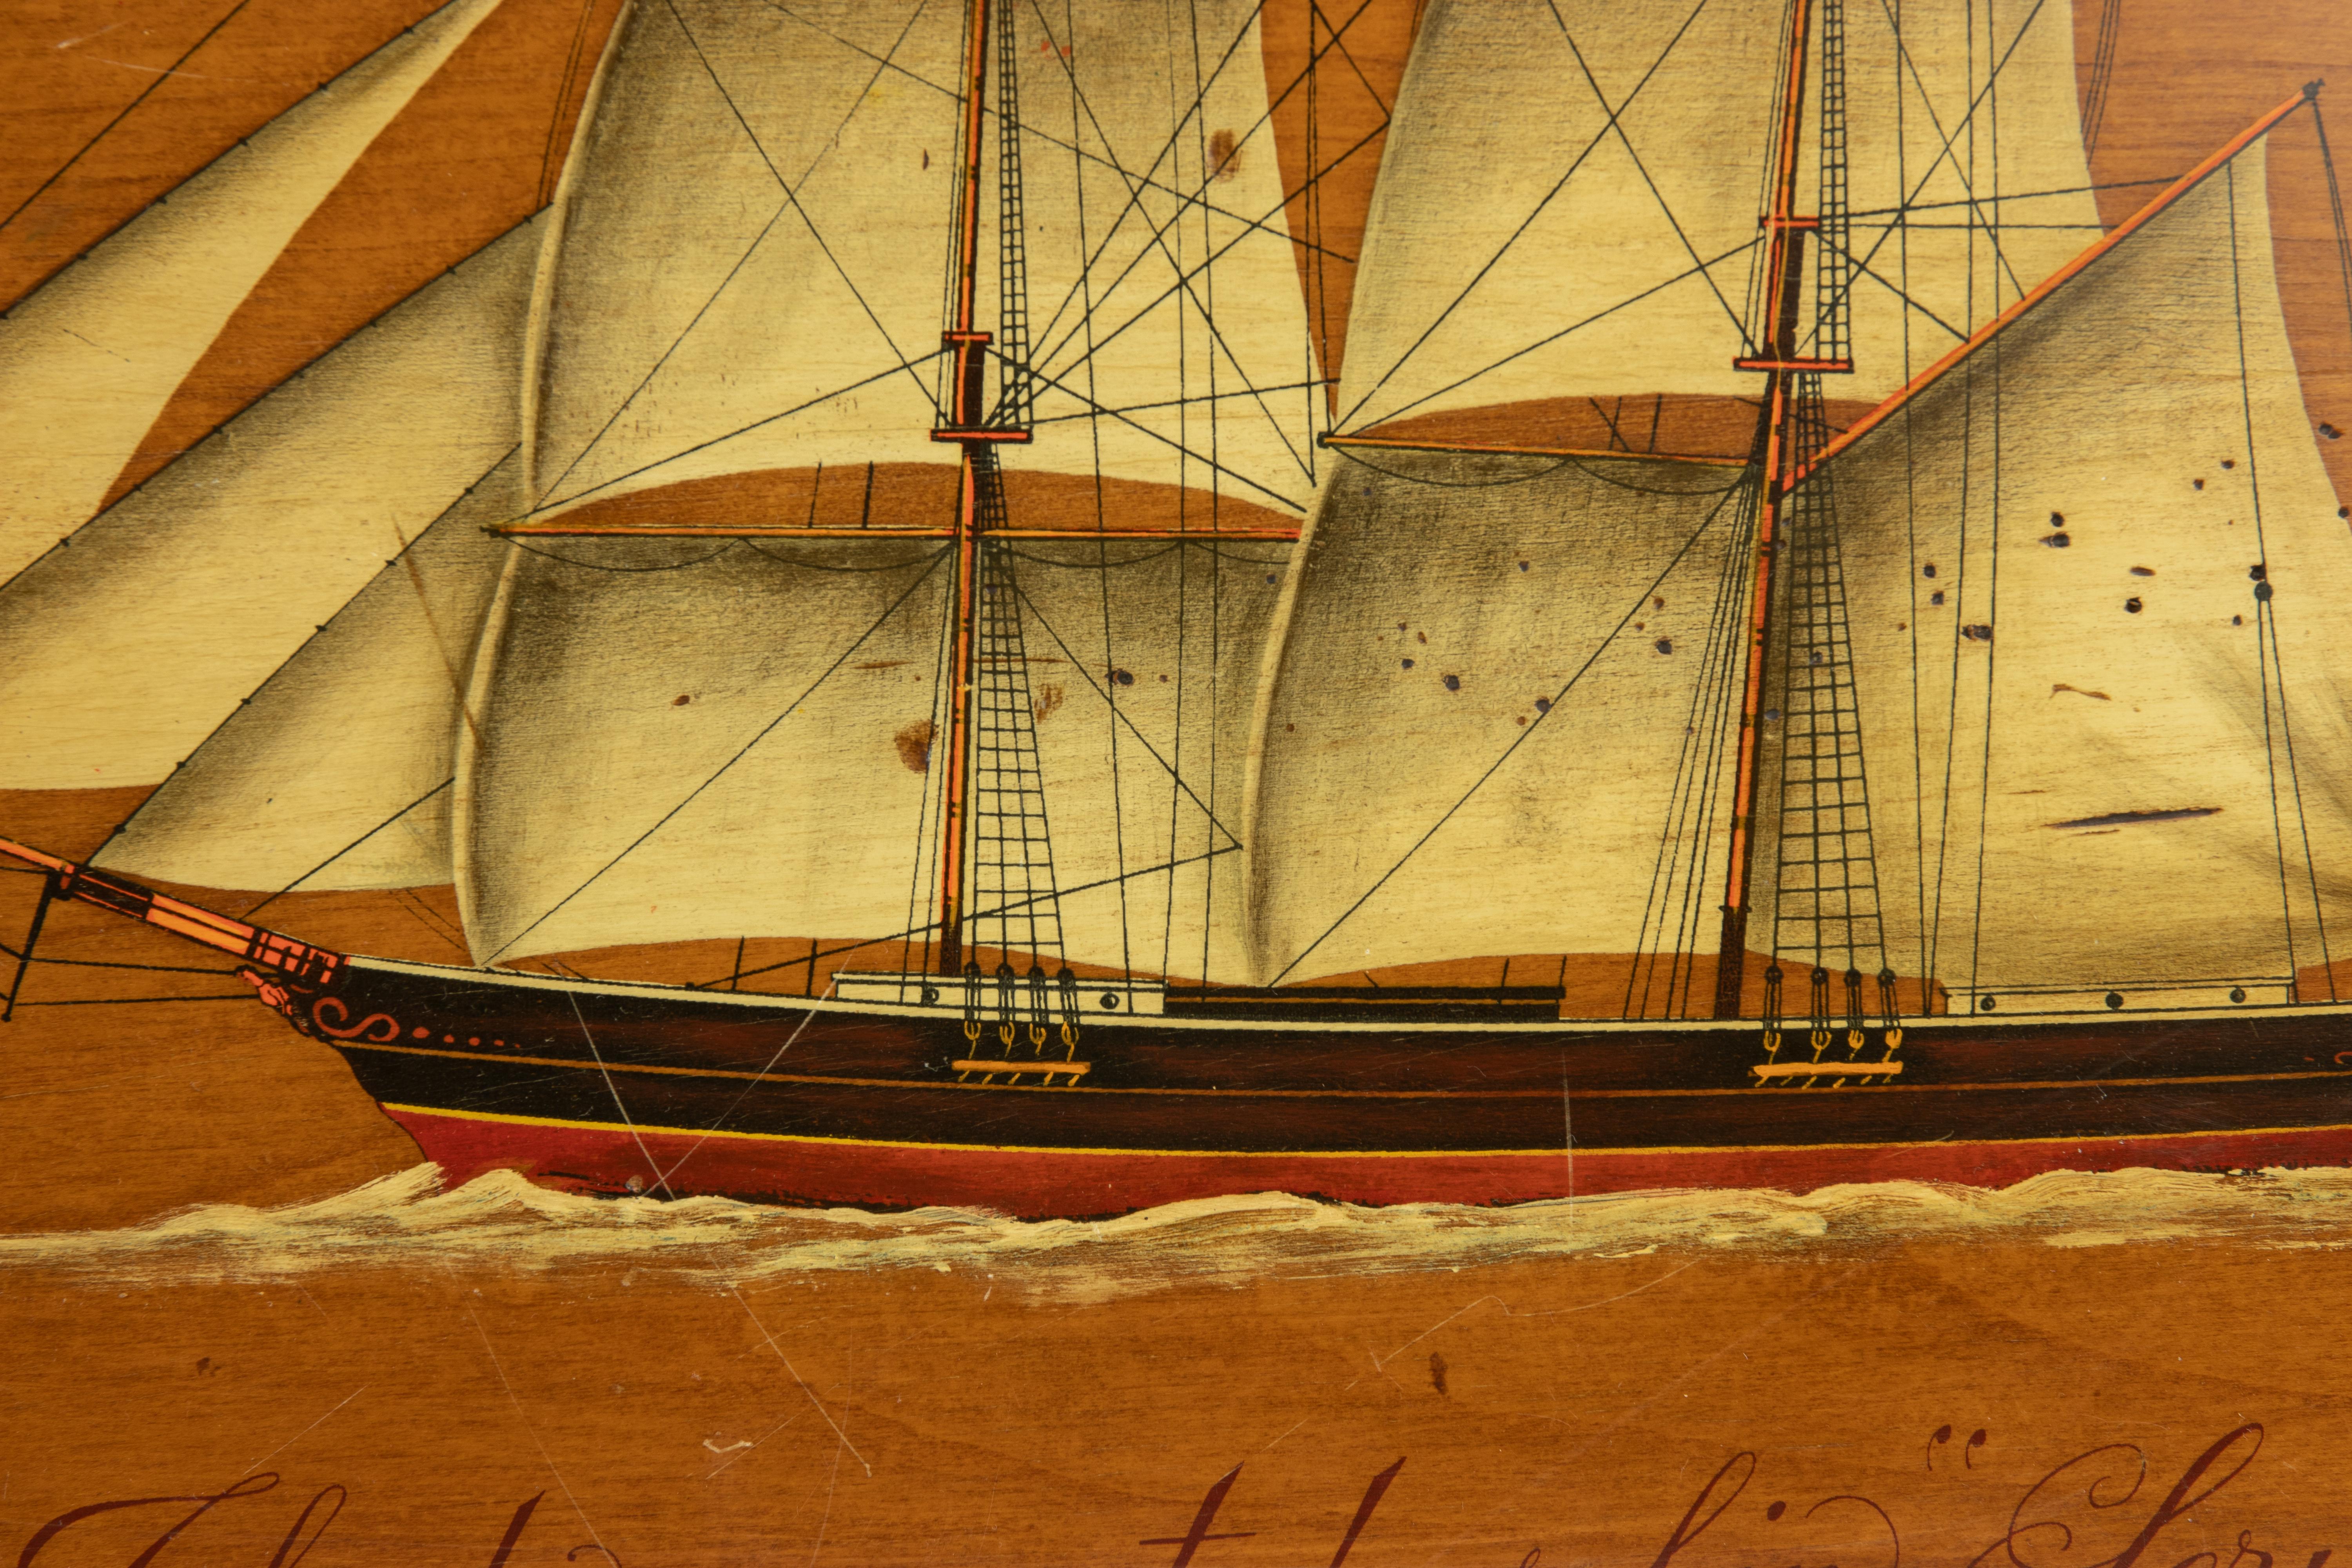 Die zweimastige Schip Serica, Temperamalerei auf Holz, Mitte des 20. Jahrhunderts. 

Die Serica war ein Klipper, der 1863 von Robert Steele & Co. in Greenock am Südufer des Clyde, Schottland, für James Findlay gebaut wurde. 

35 x 45 cm.

Gute